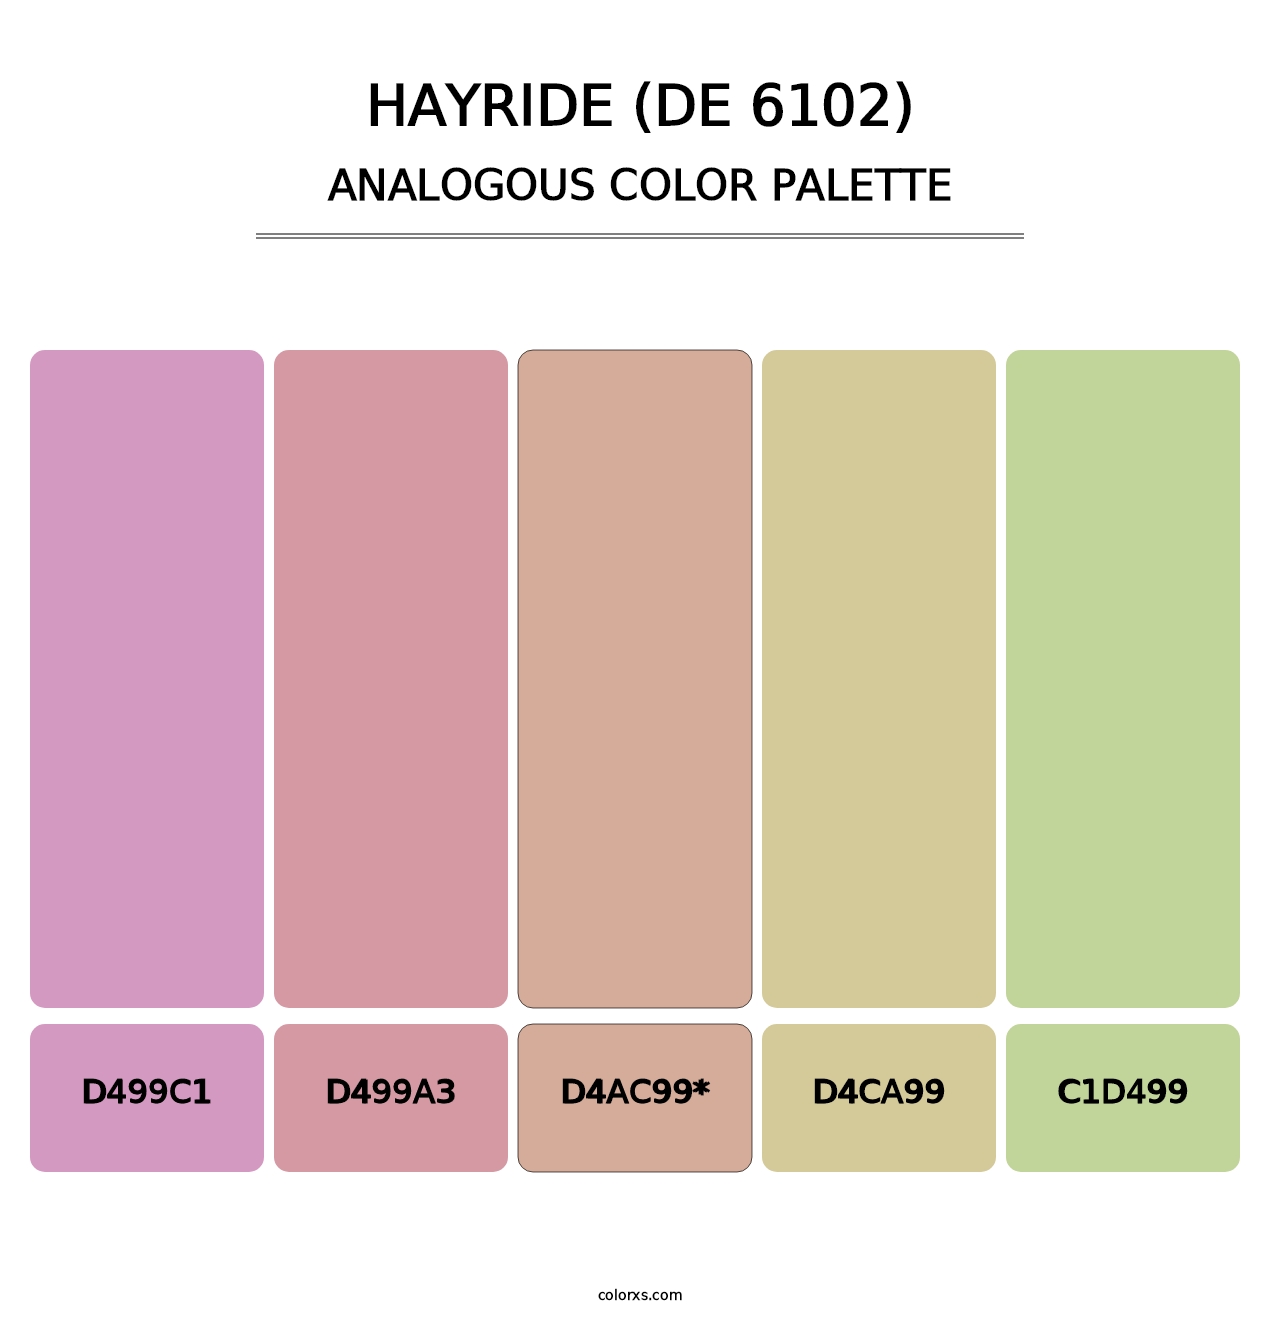 Hayride (DE 6102) - Analogous Color Palette